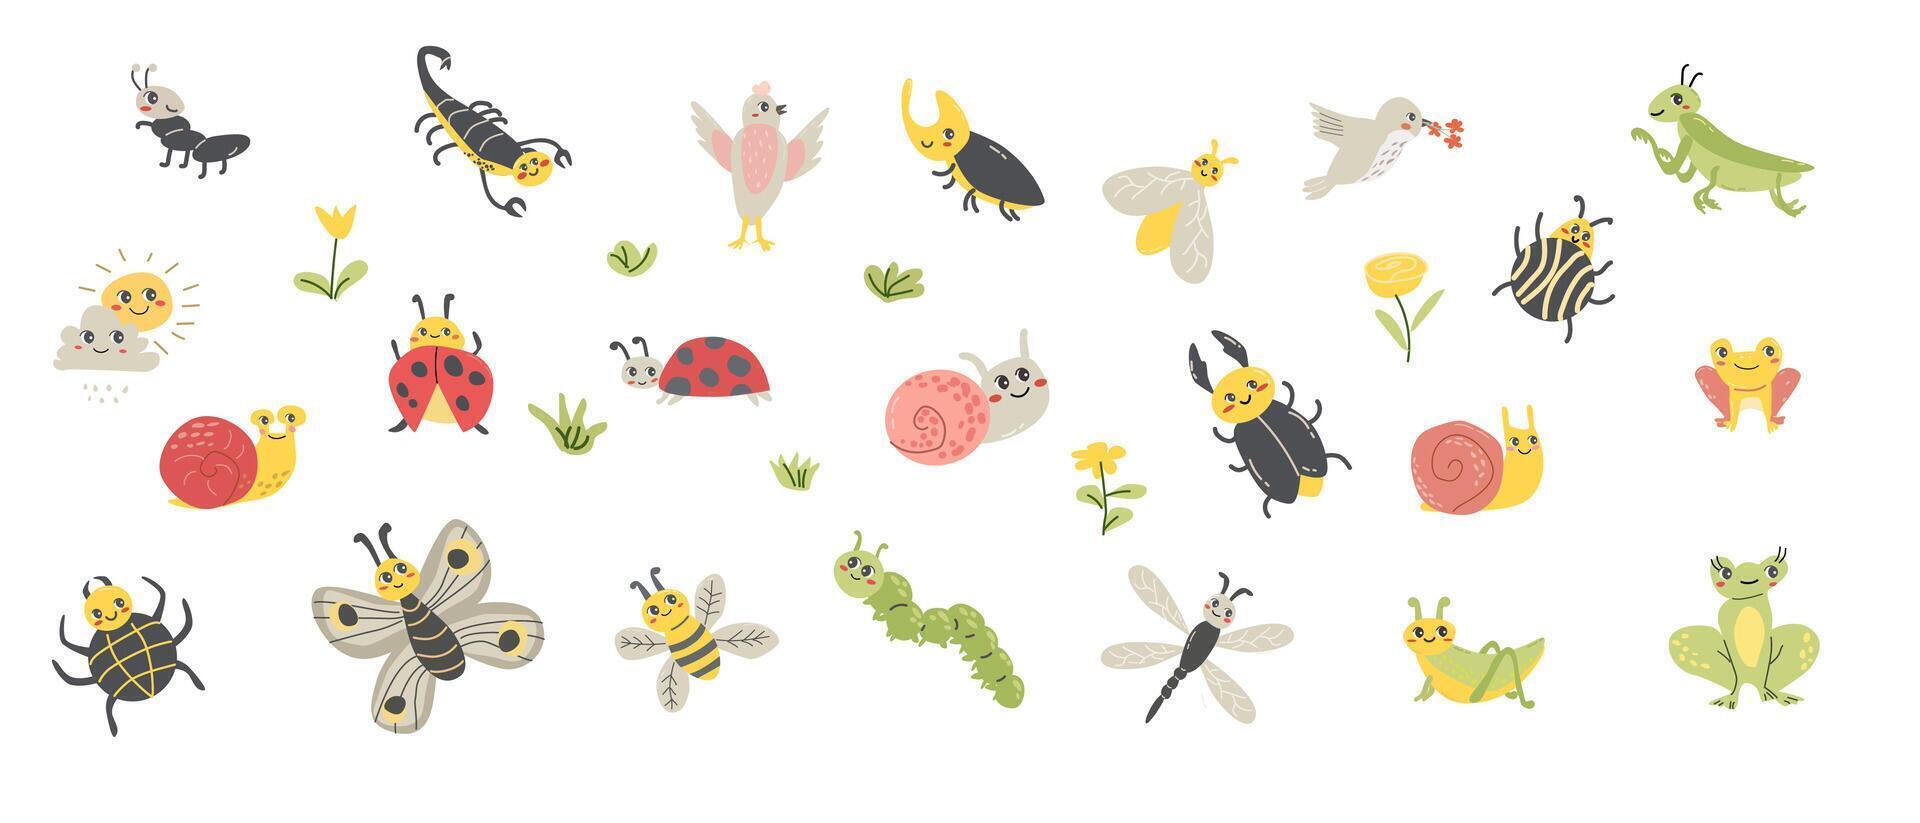 carino cartone animato animali e insetti bug, la farfalla, uccelli, rana. vettore illustrazione isolato. scarafaggio bug, coccinella, bruco, lumaca e altro animali. grande impostato di cartone animato personaggi con fiore e erba.